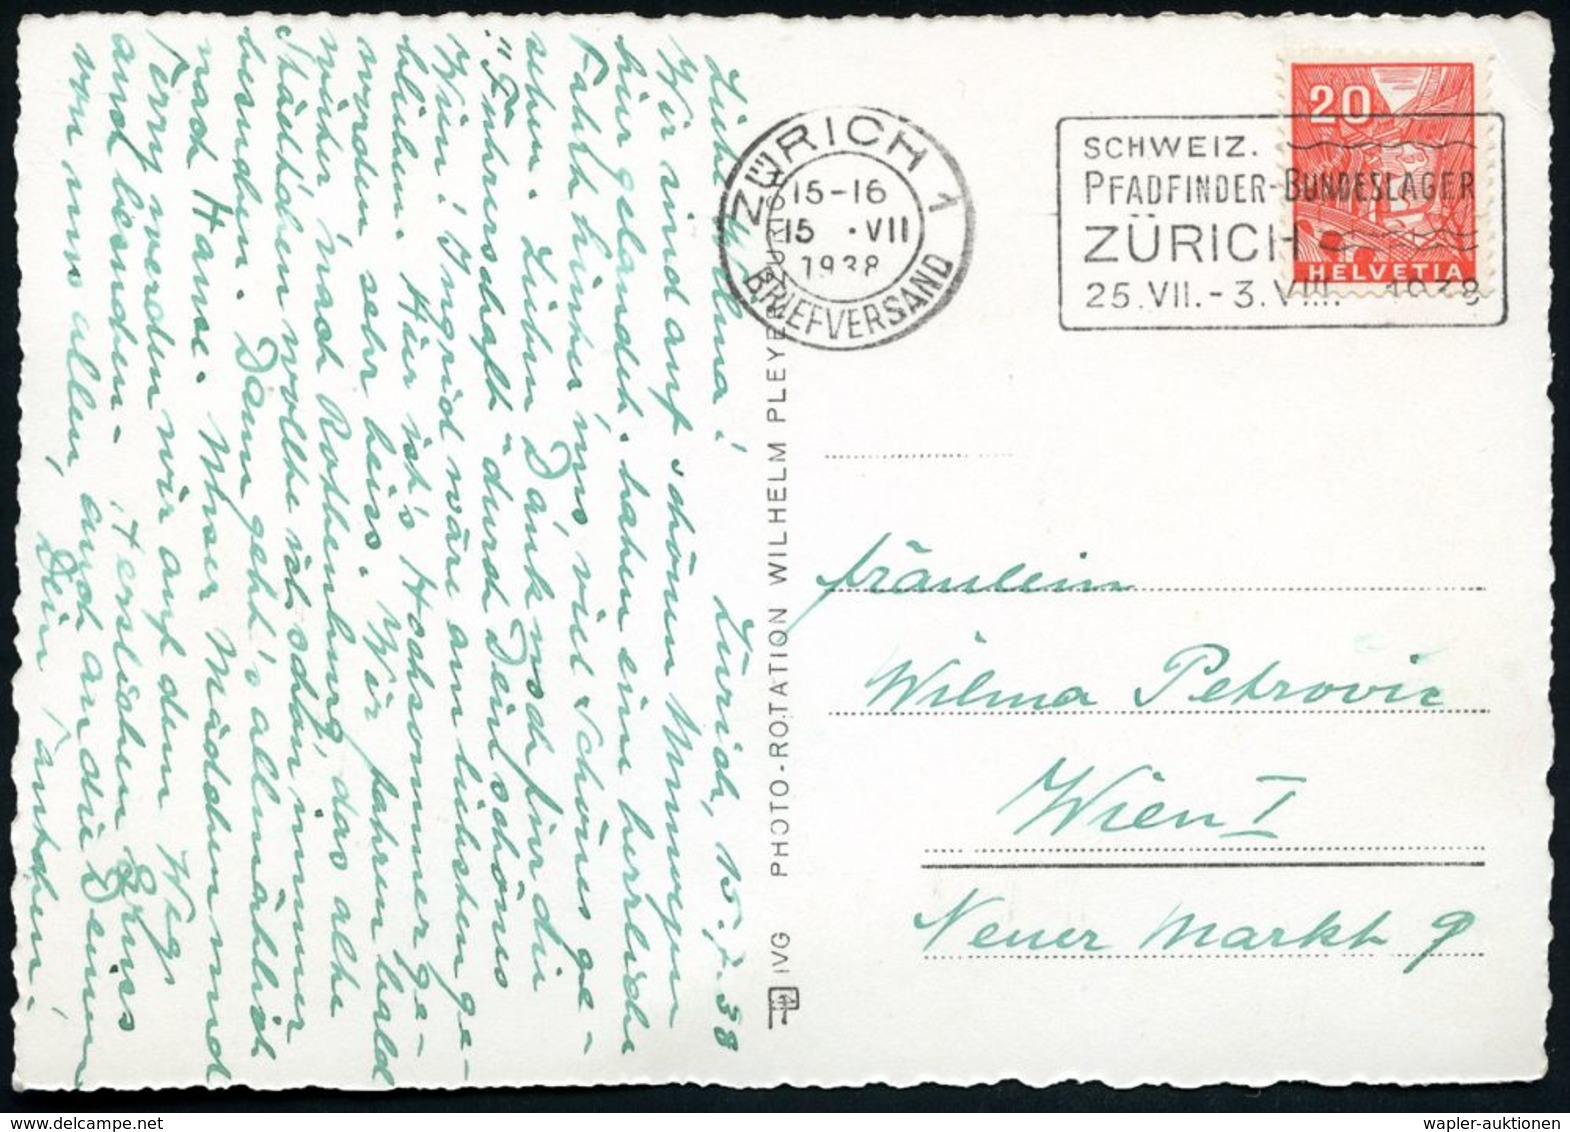 SCHWEIZ 1938 (15.7.) MWSt.: ZÜRICH 1/SCHWEIZ./PFADFINDER-BUNDESLAGER/ZÜRICH.. , Seltene Bedarfs-Kt. - - Storia Postale